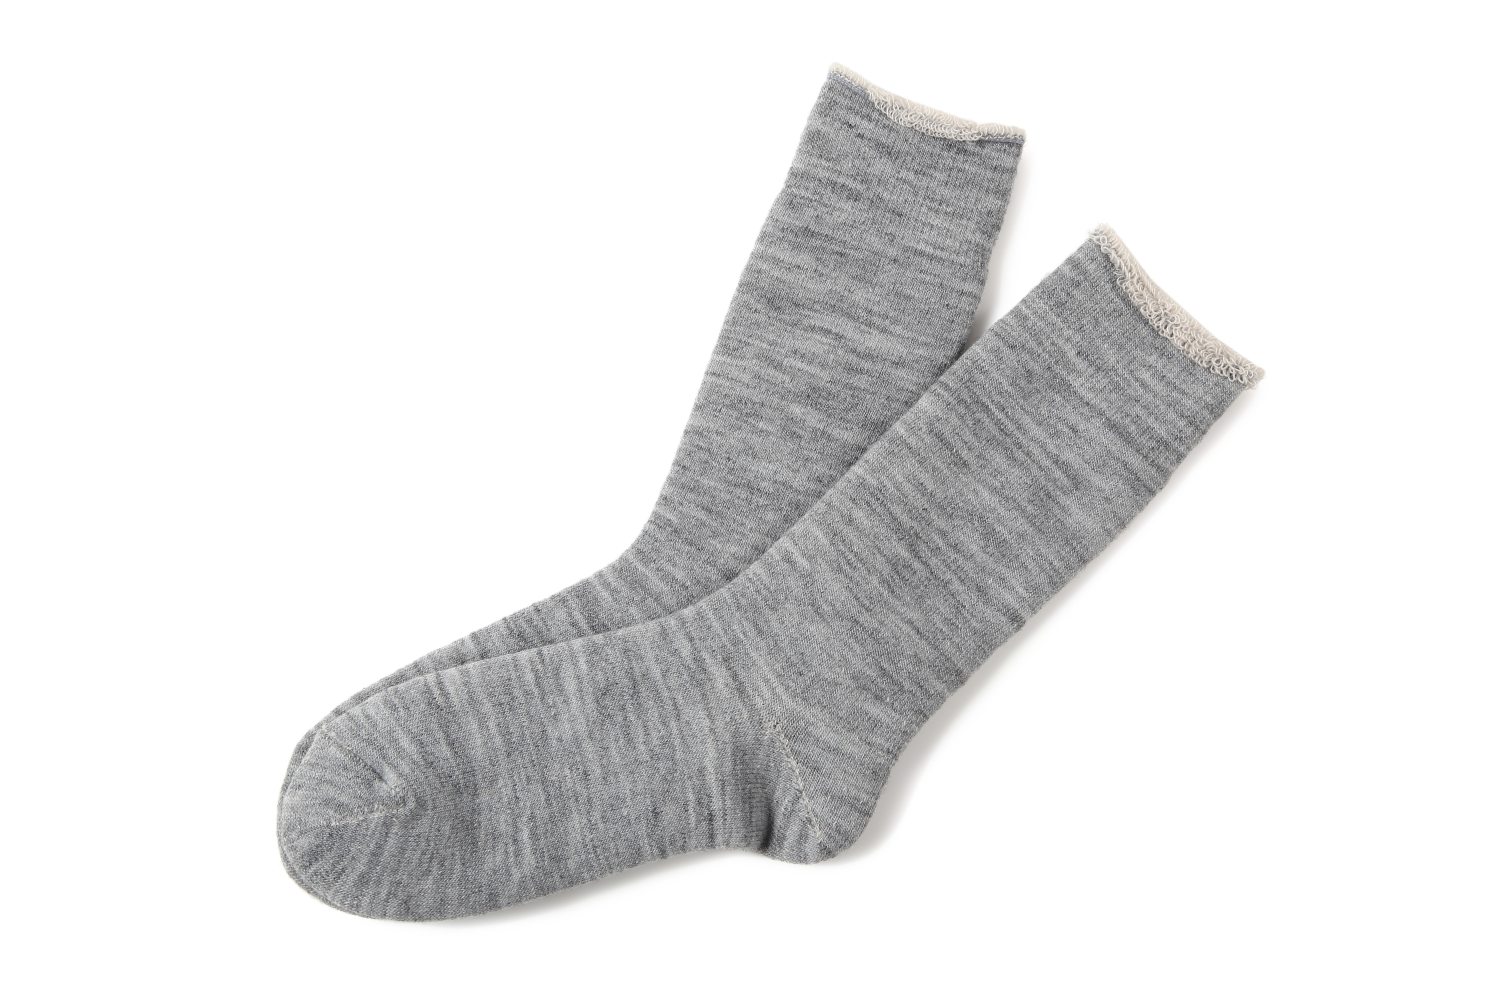  fuwaの商品一覧 - e-socks